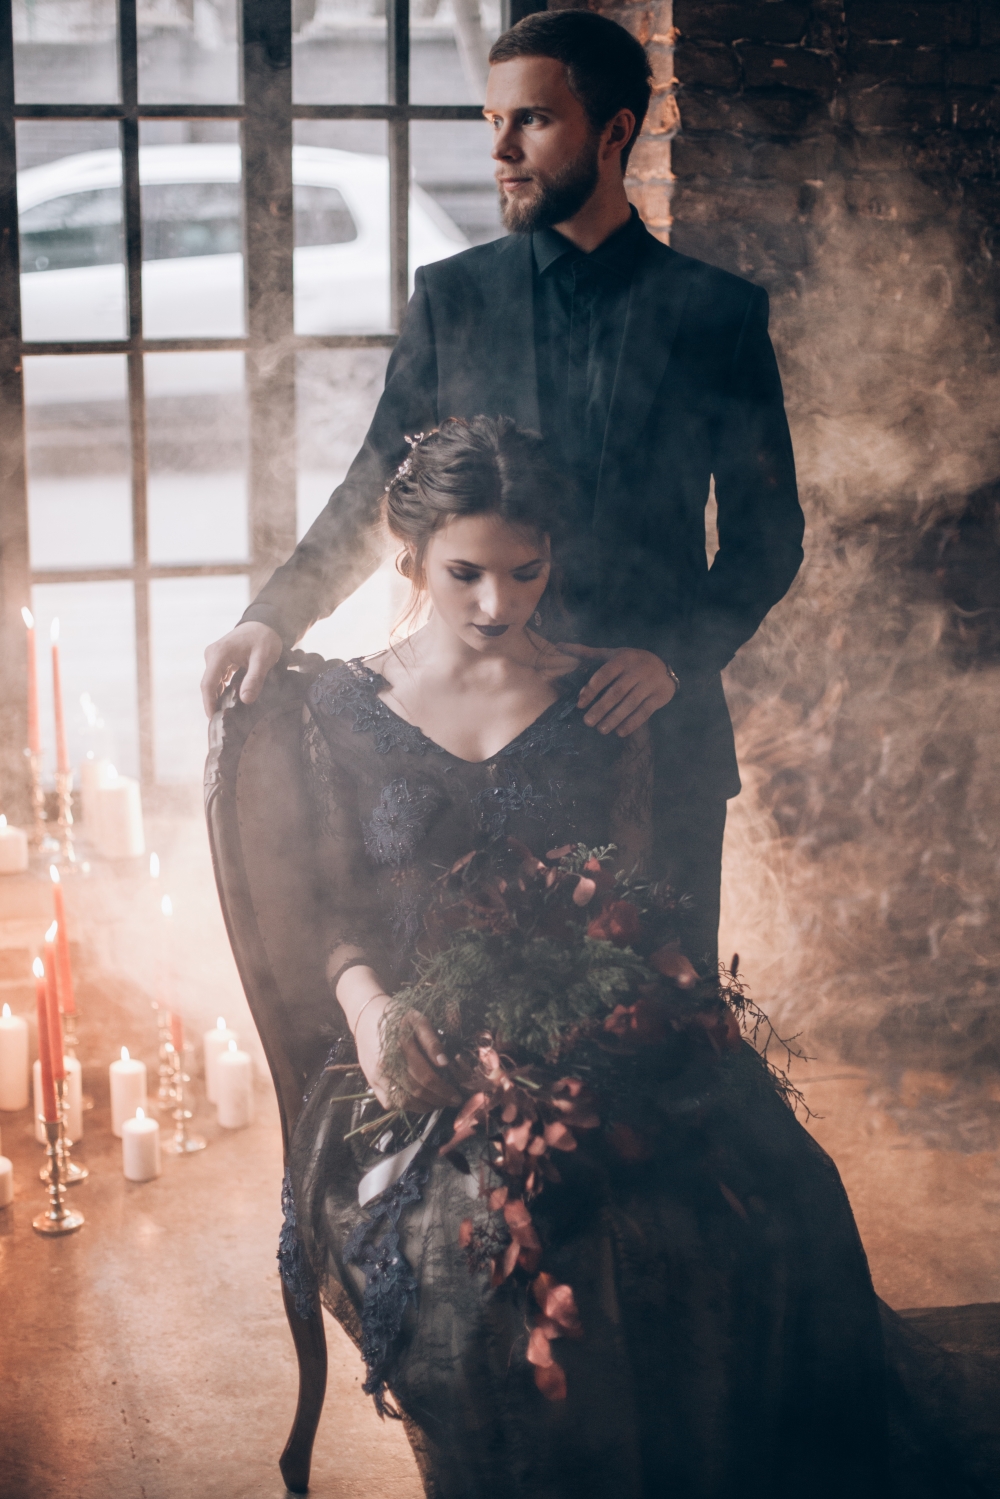 Романтичная свадебная съемка в темных тонах
За фото спасибо @k.karpeshova